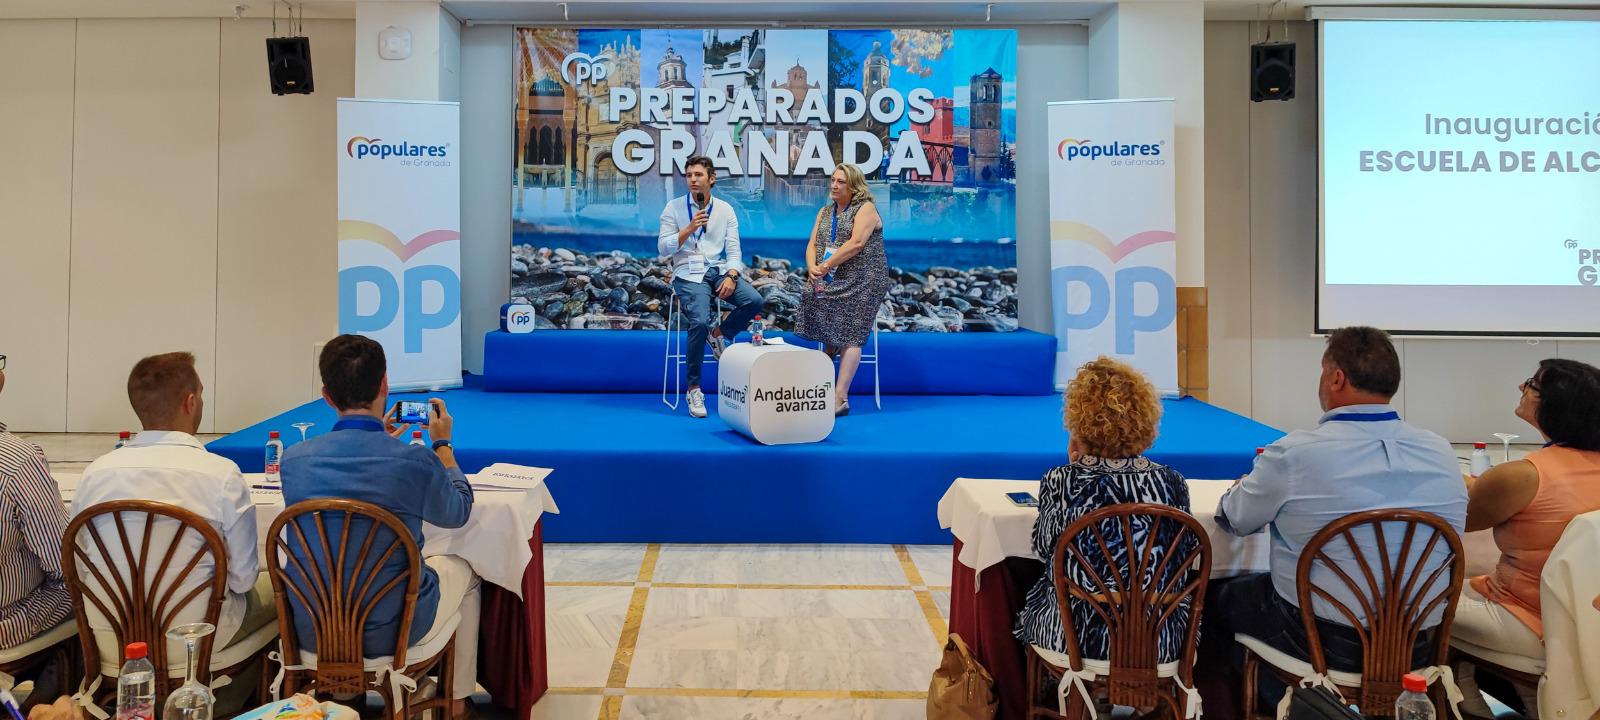 El PP de Granada inicia el curso político en Almuñécar con la vista puesta en las alcaldías, la capital y la Diputación